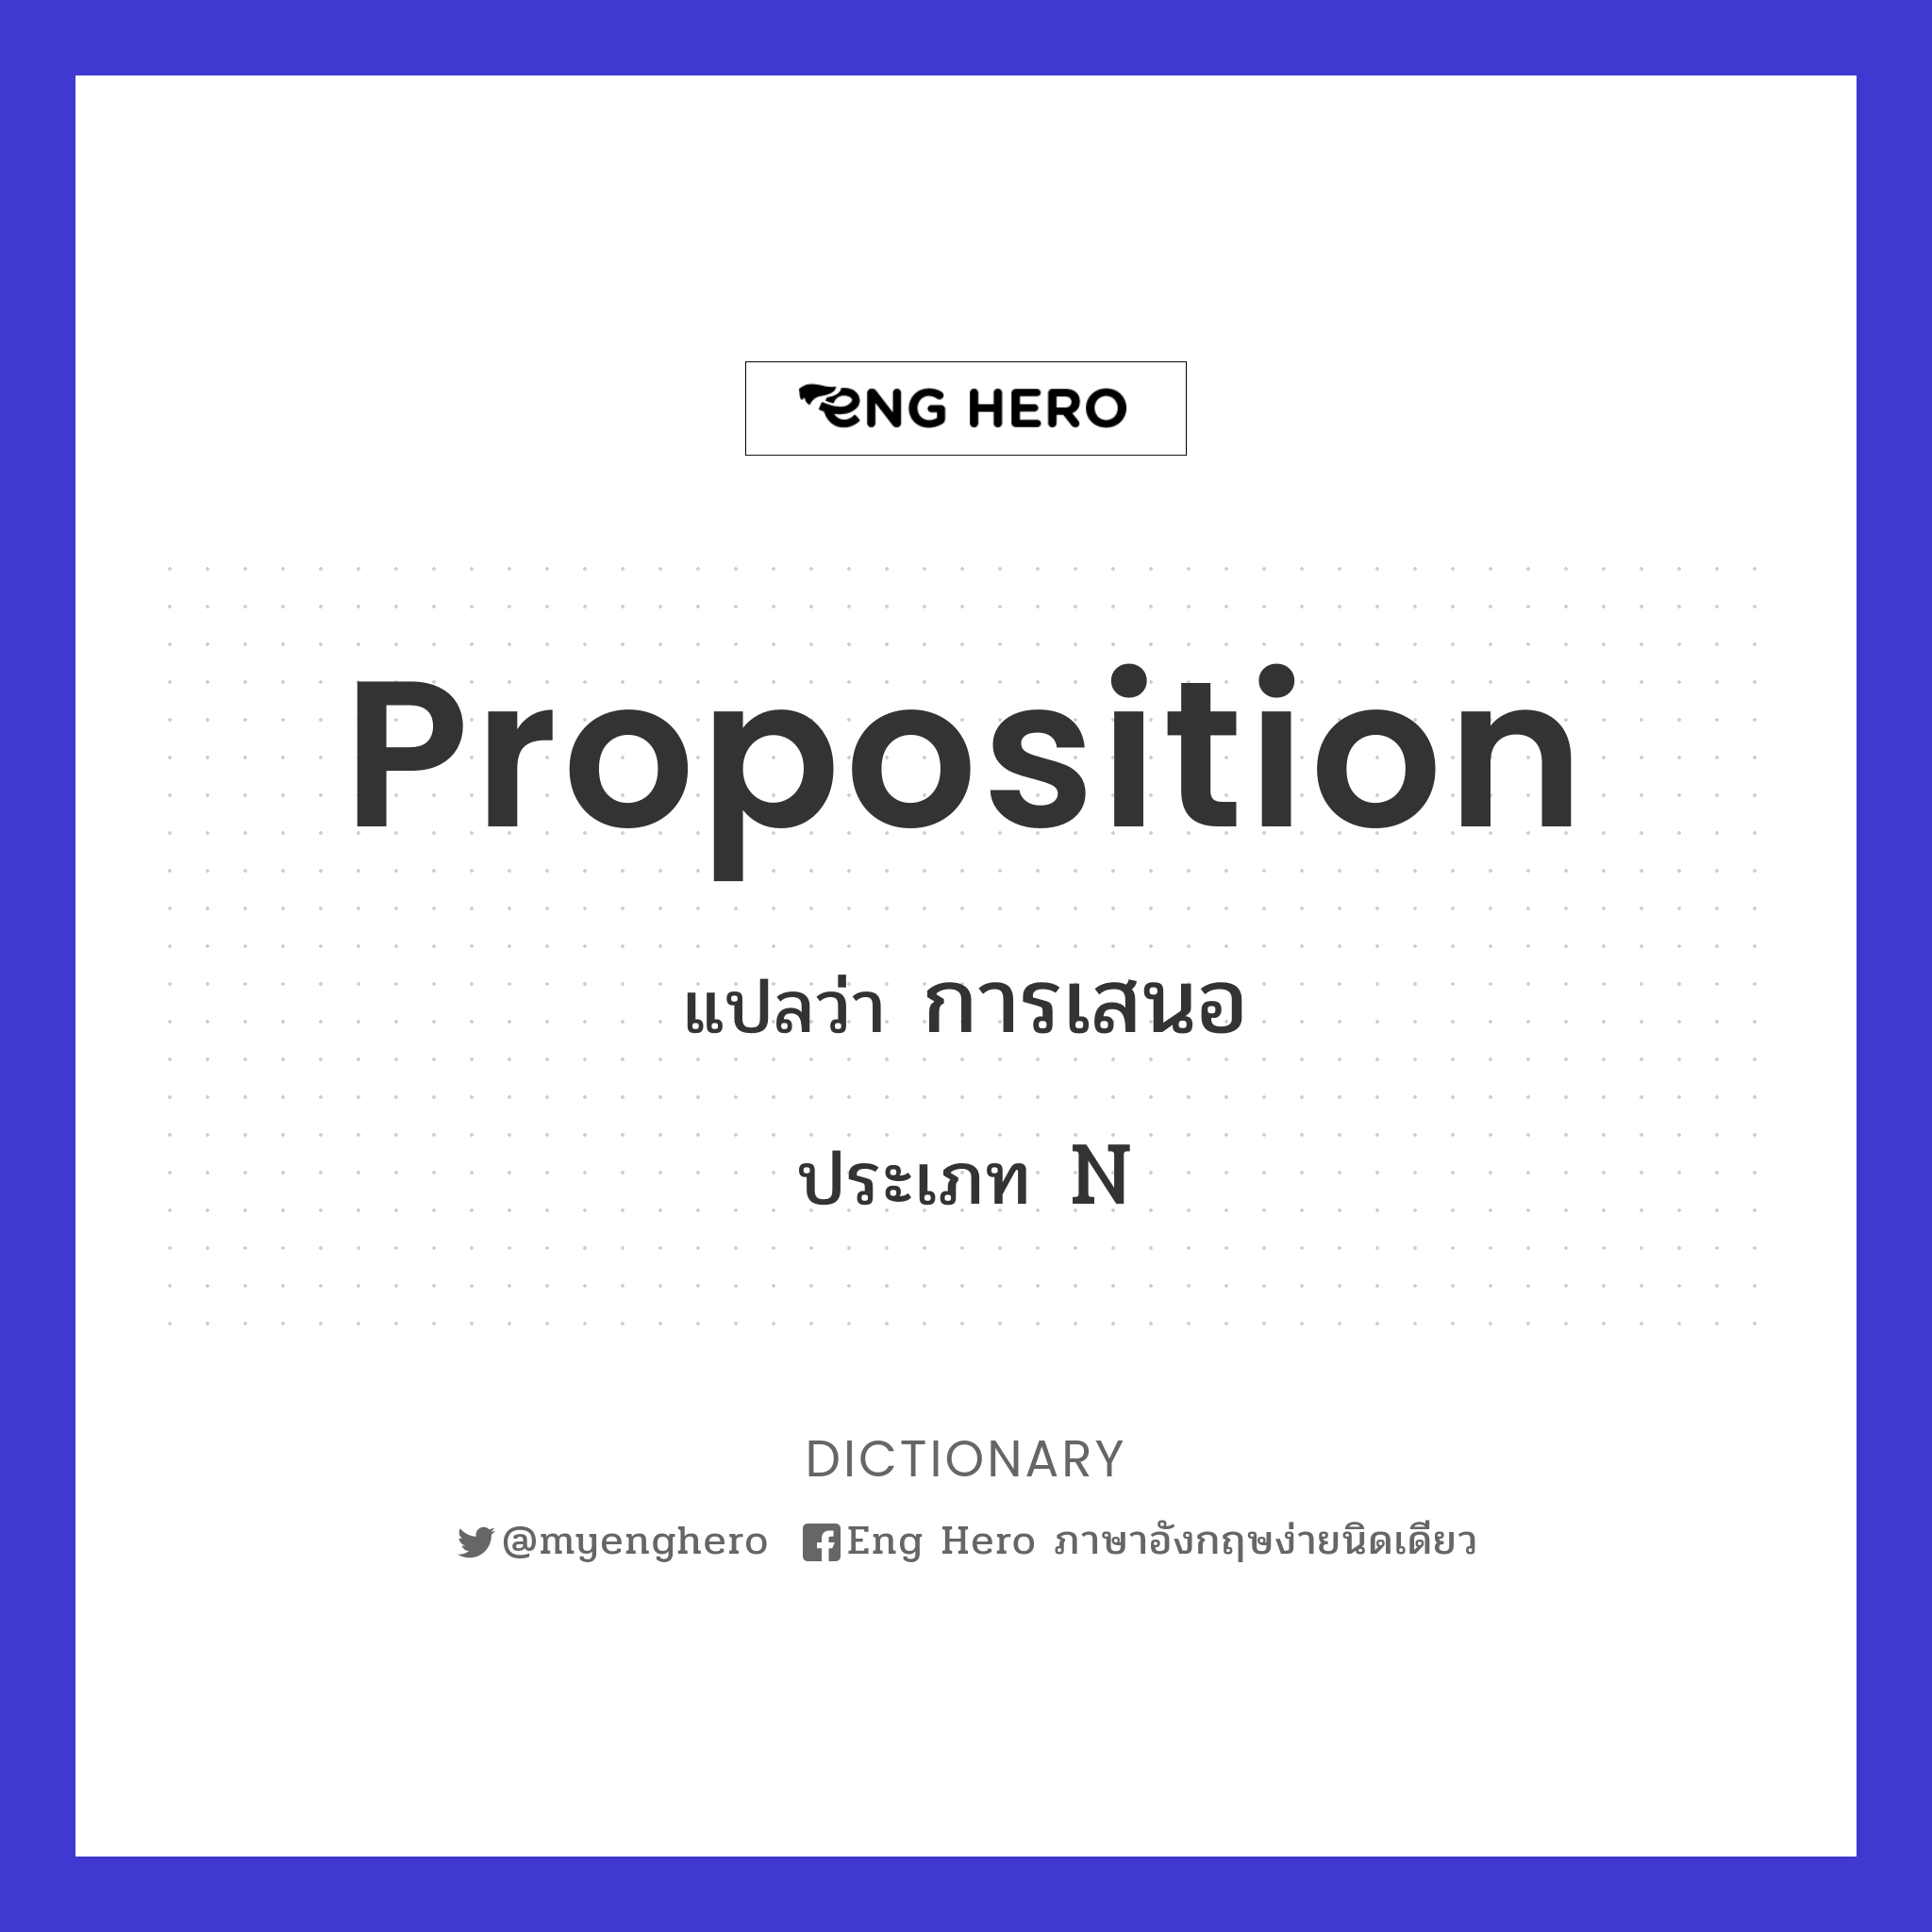 proposition